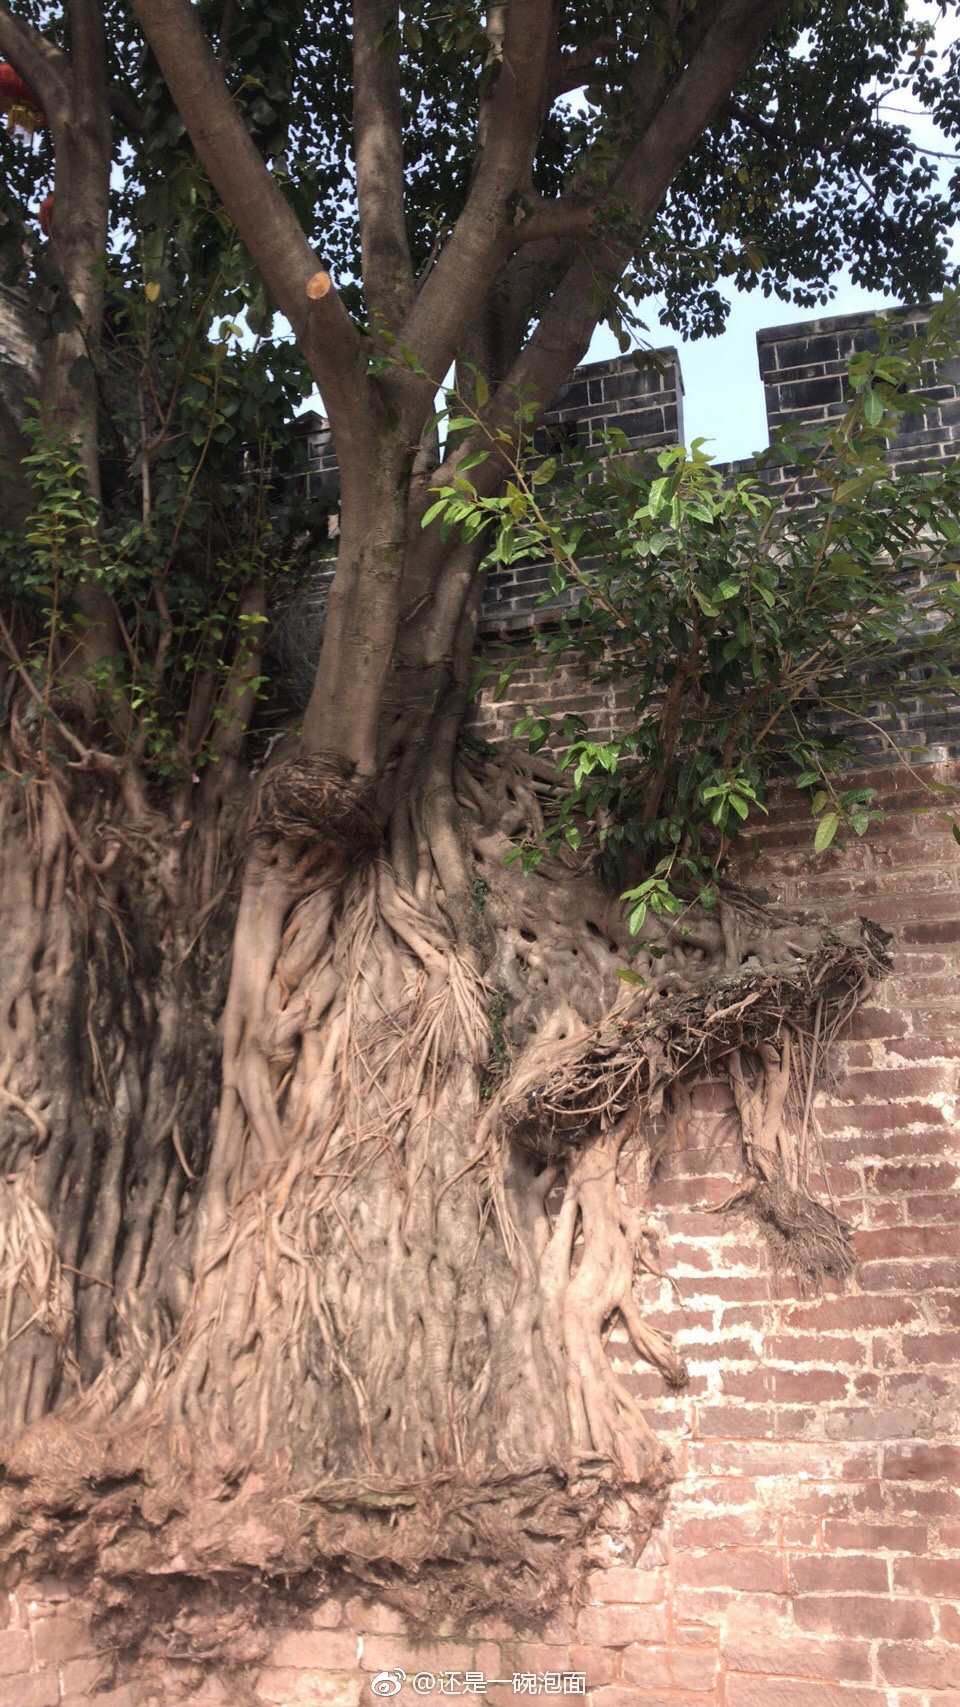 西昌古城城墙上的树好漂亮啊！ 